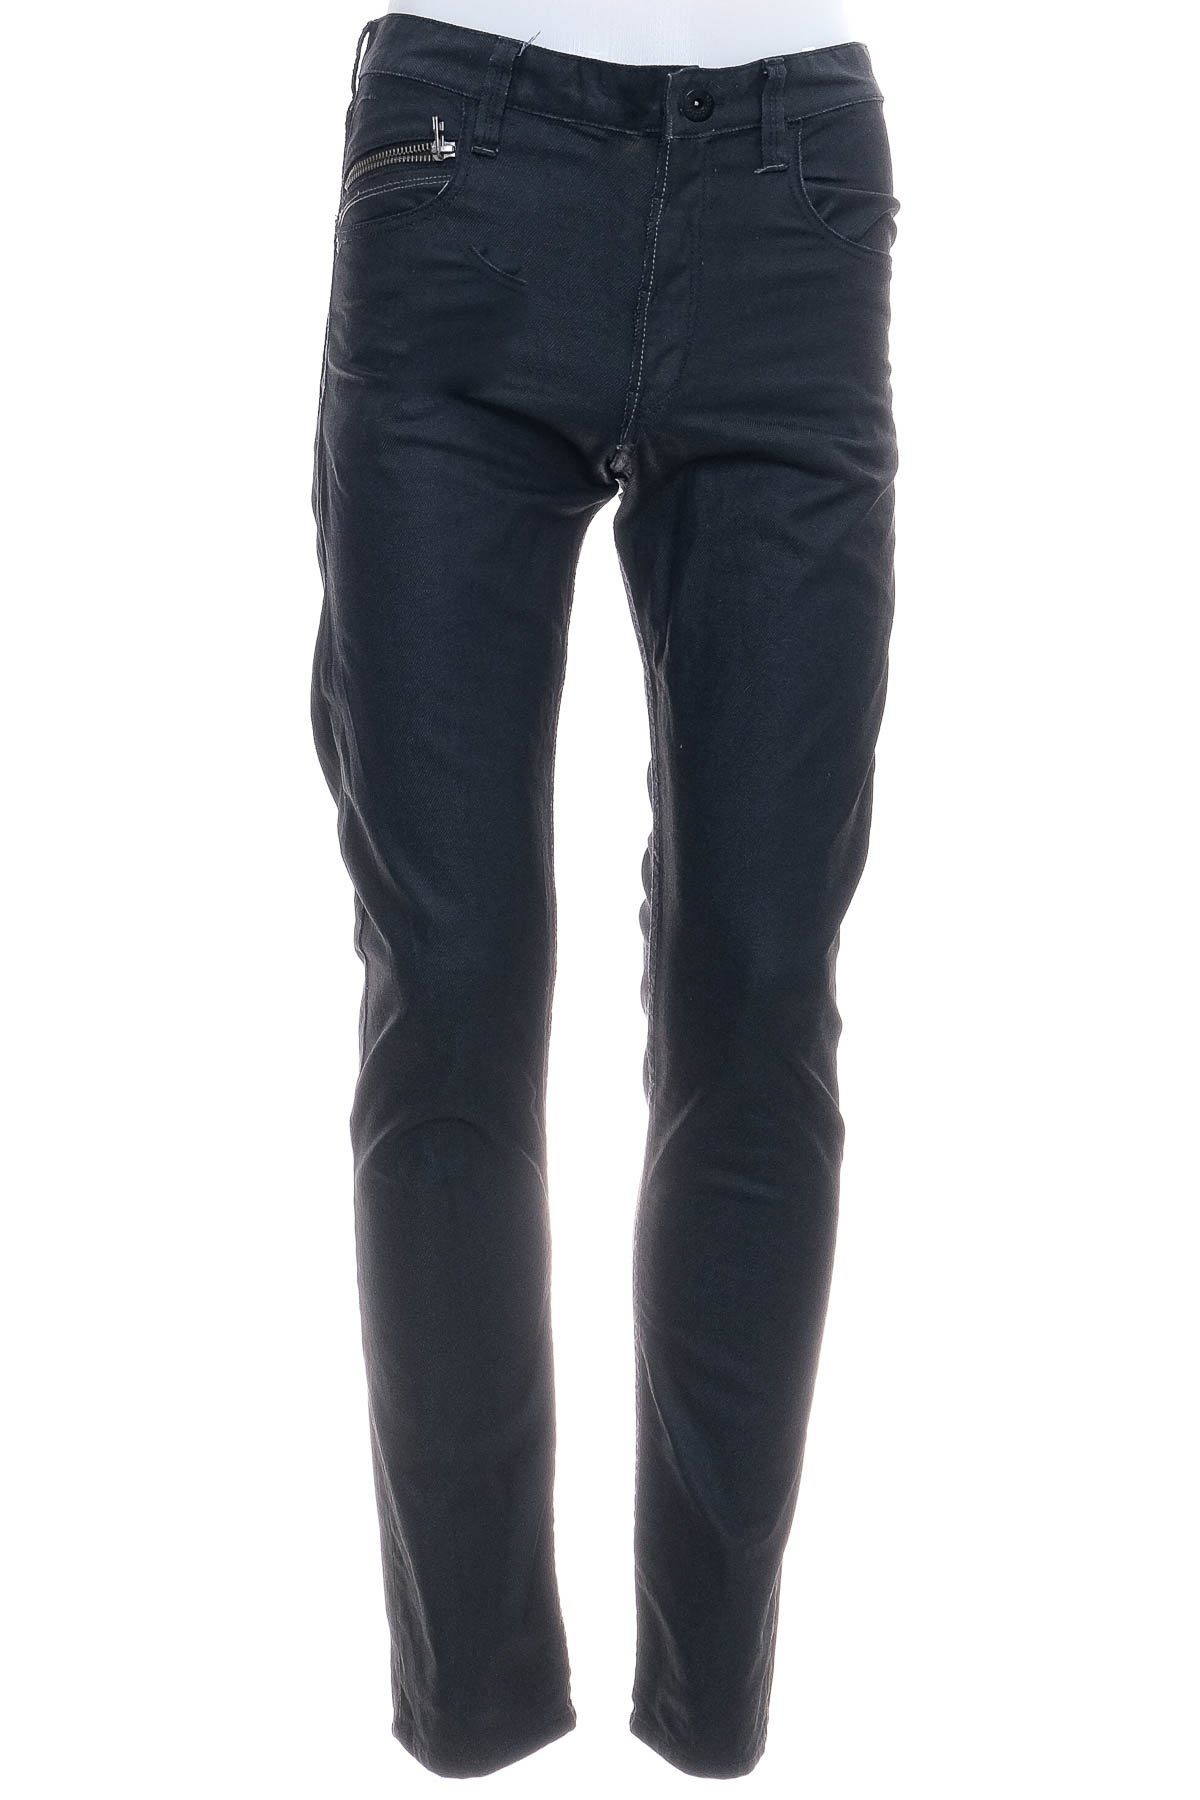 Boy jeans - H&M - 0